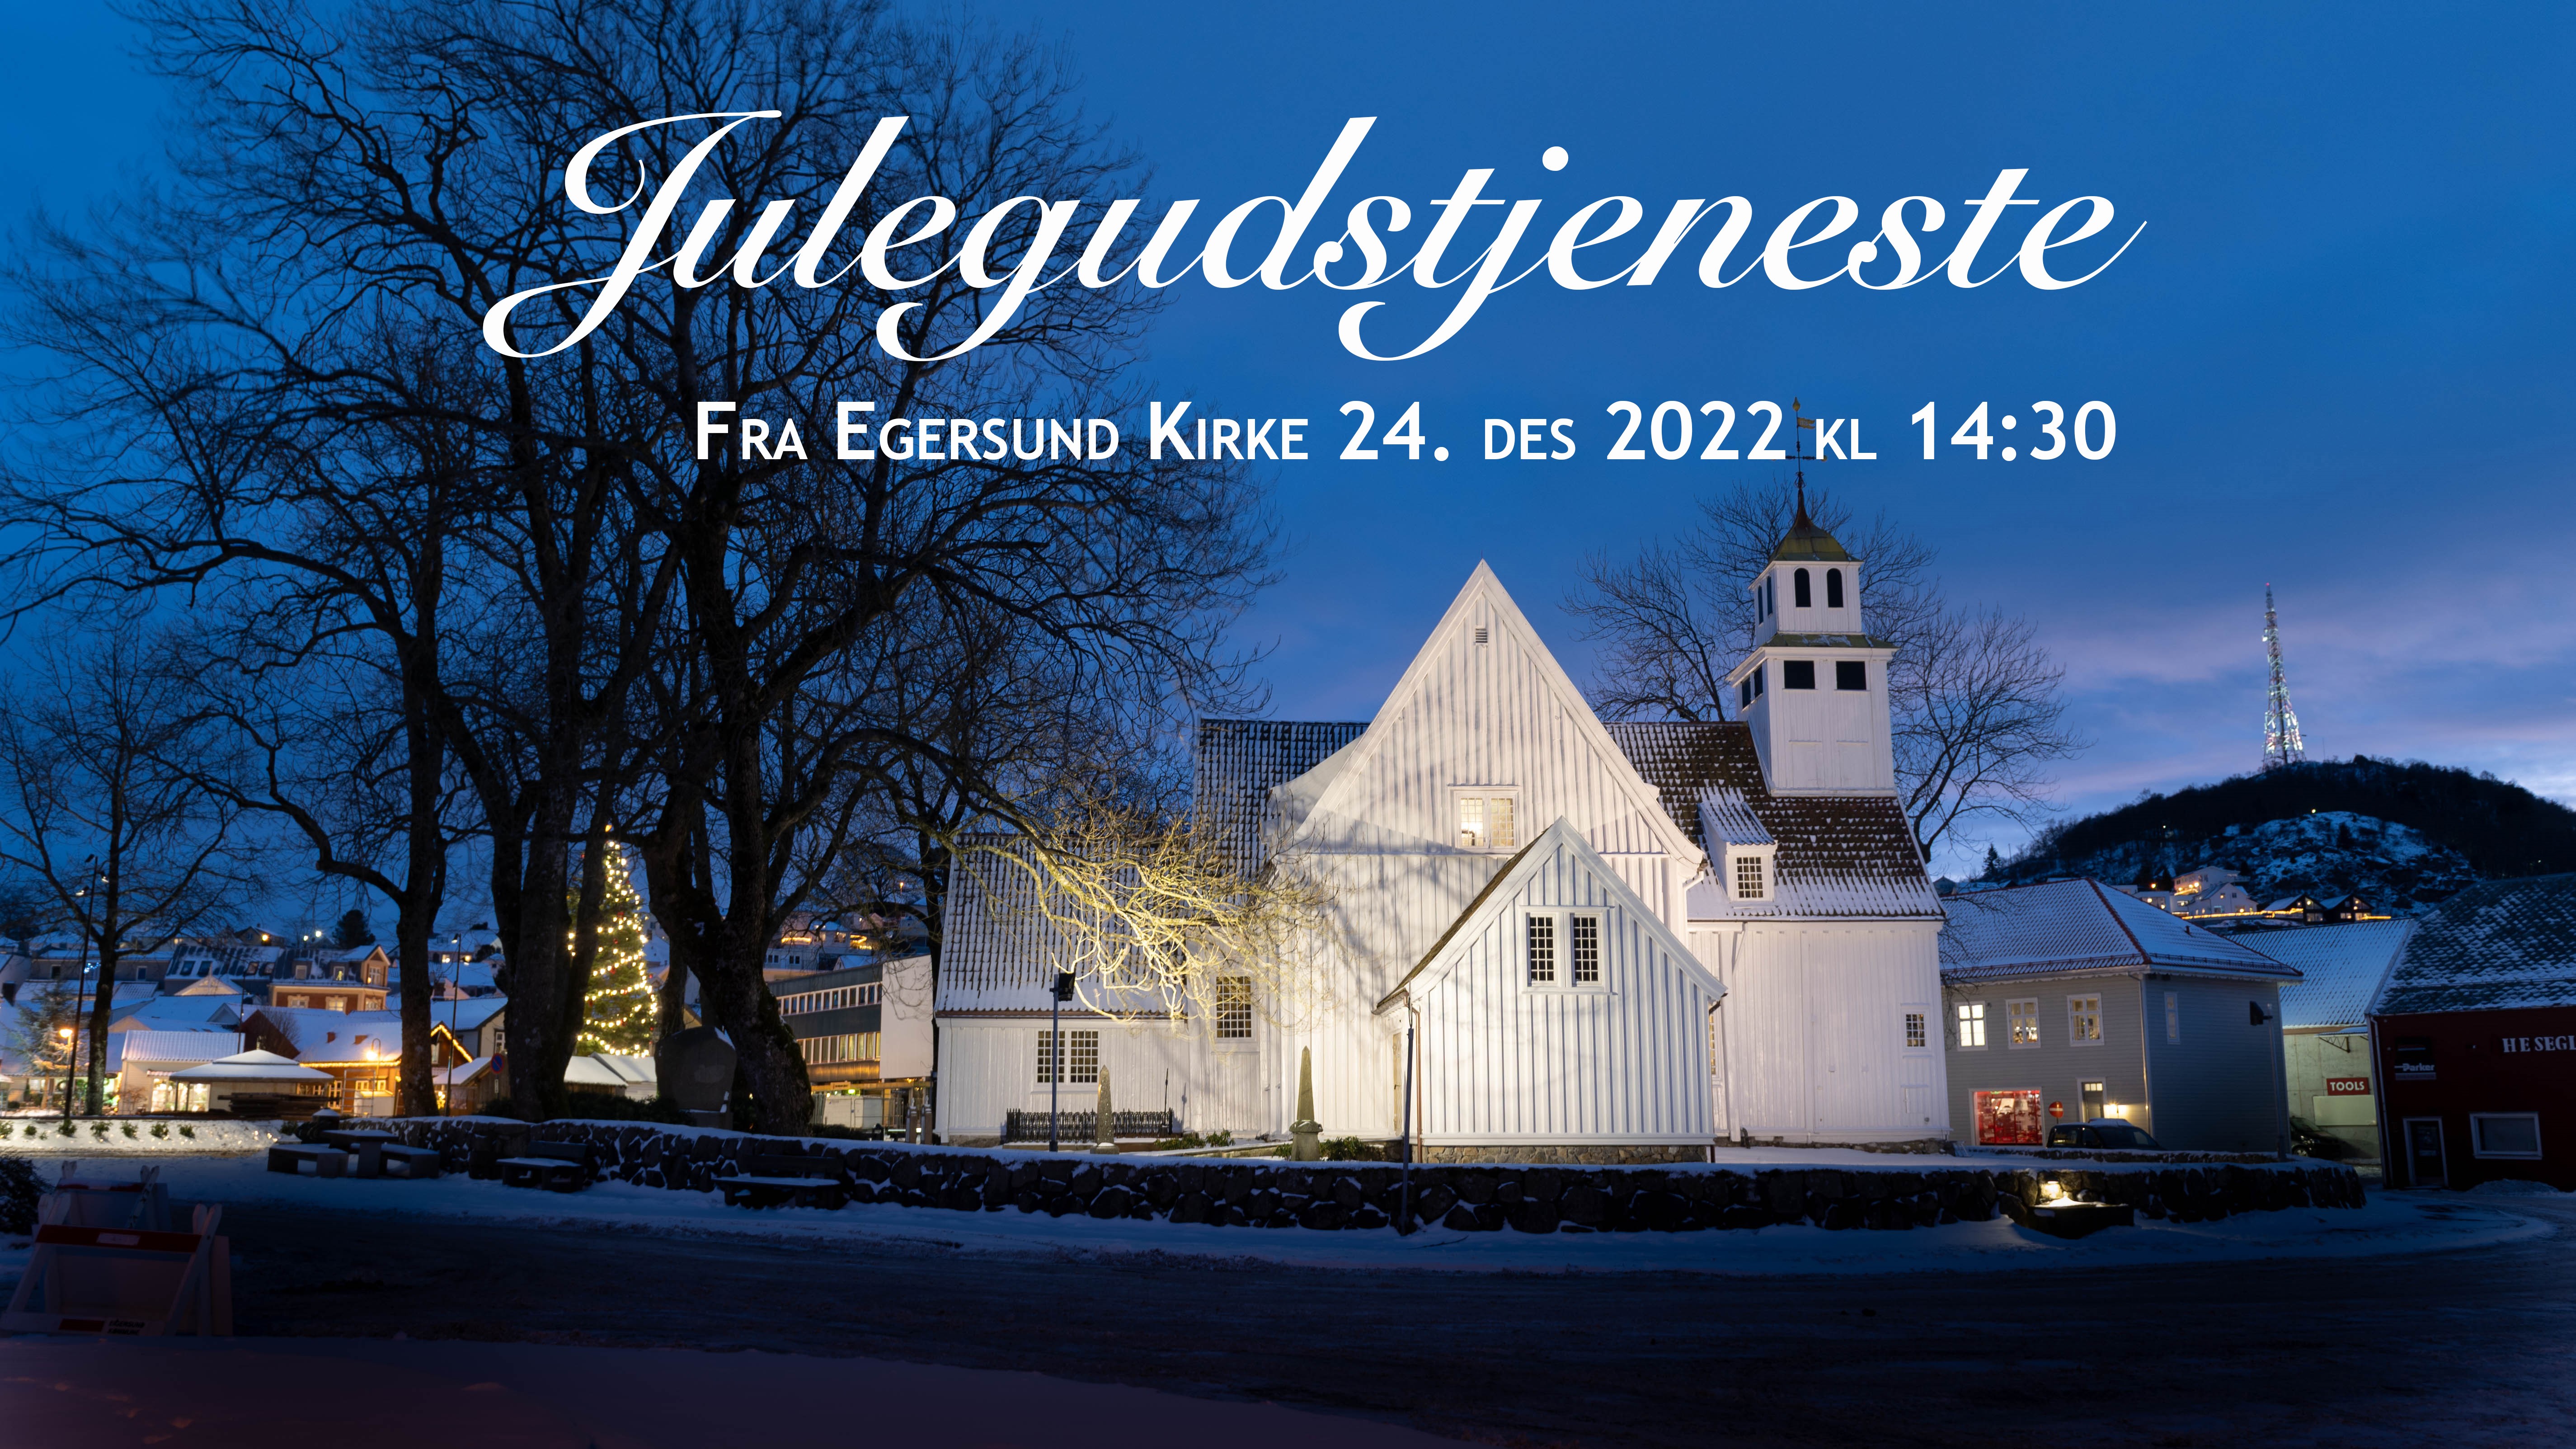 Overføring av julegustjenesten fra Egersund kirke 24/12 kl 16:00